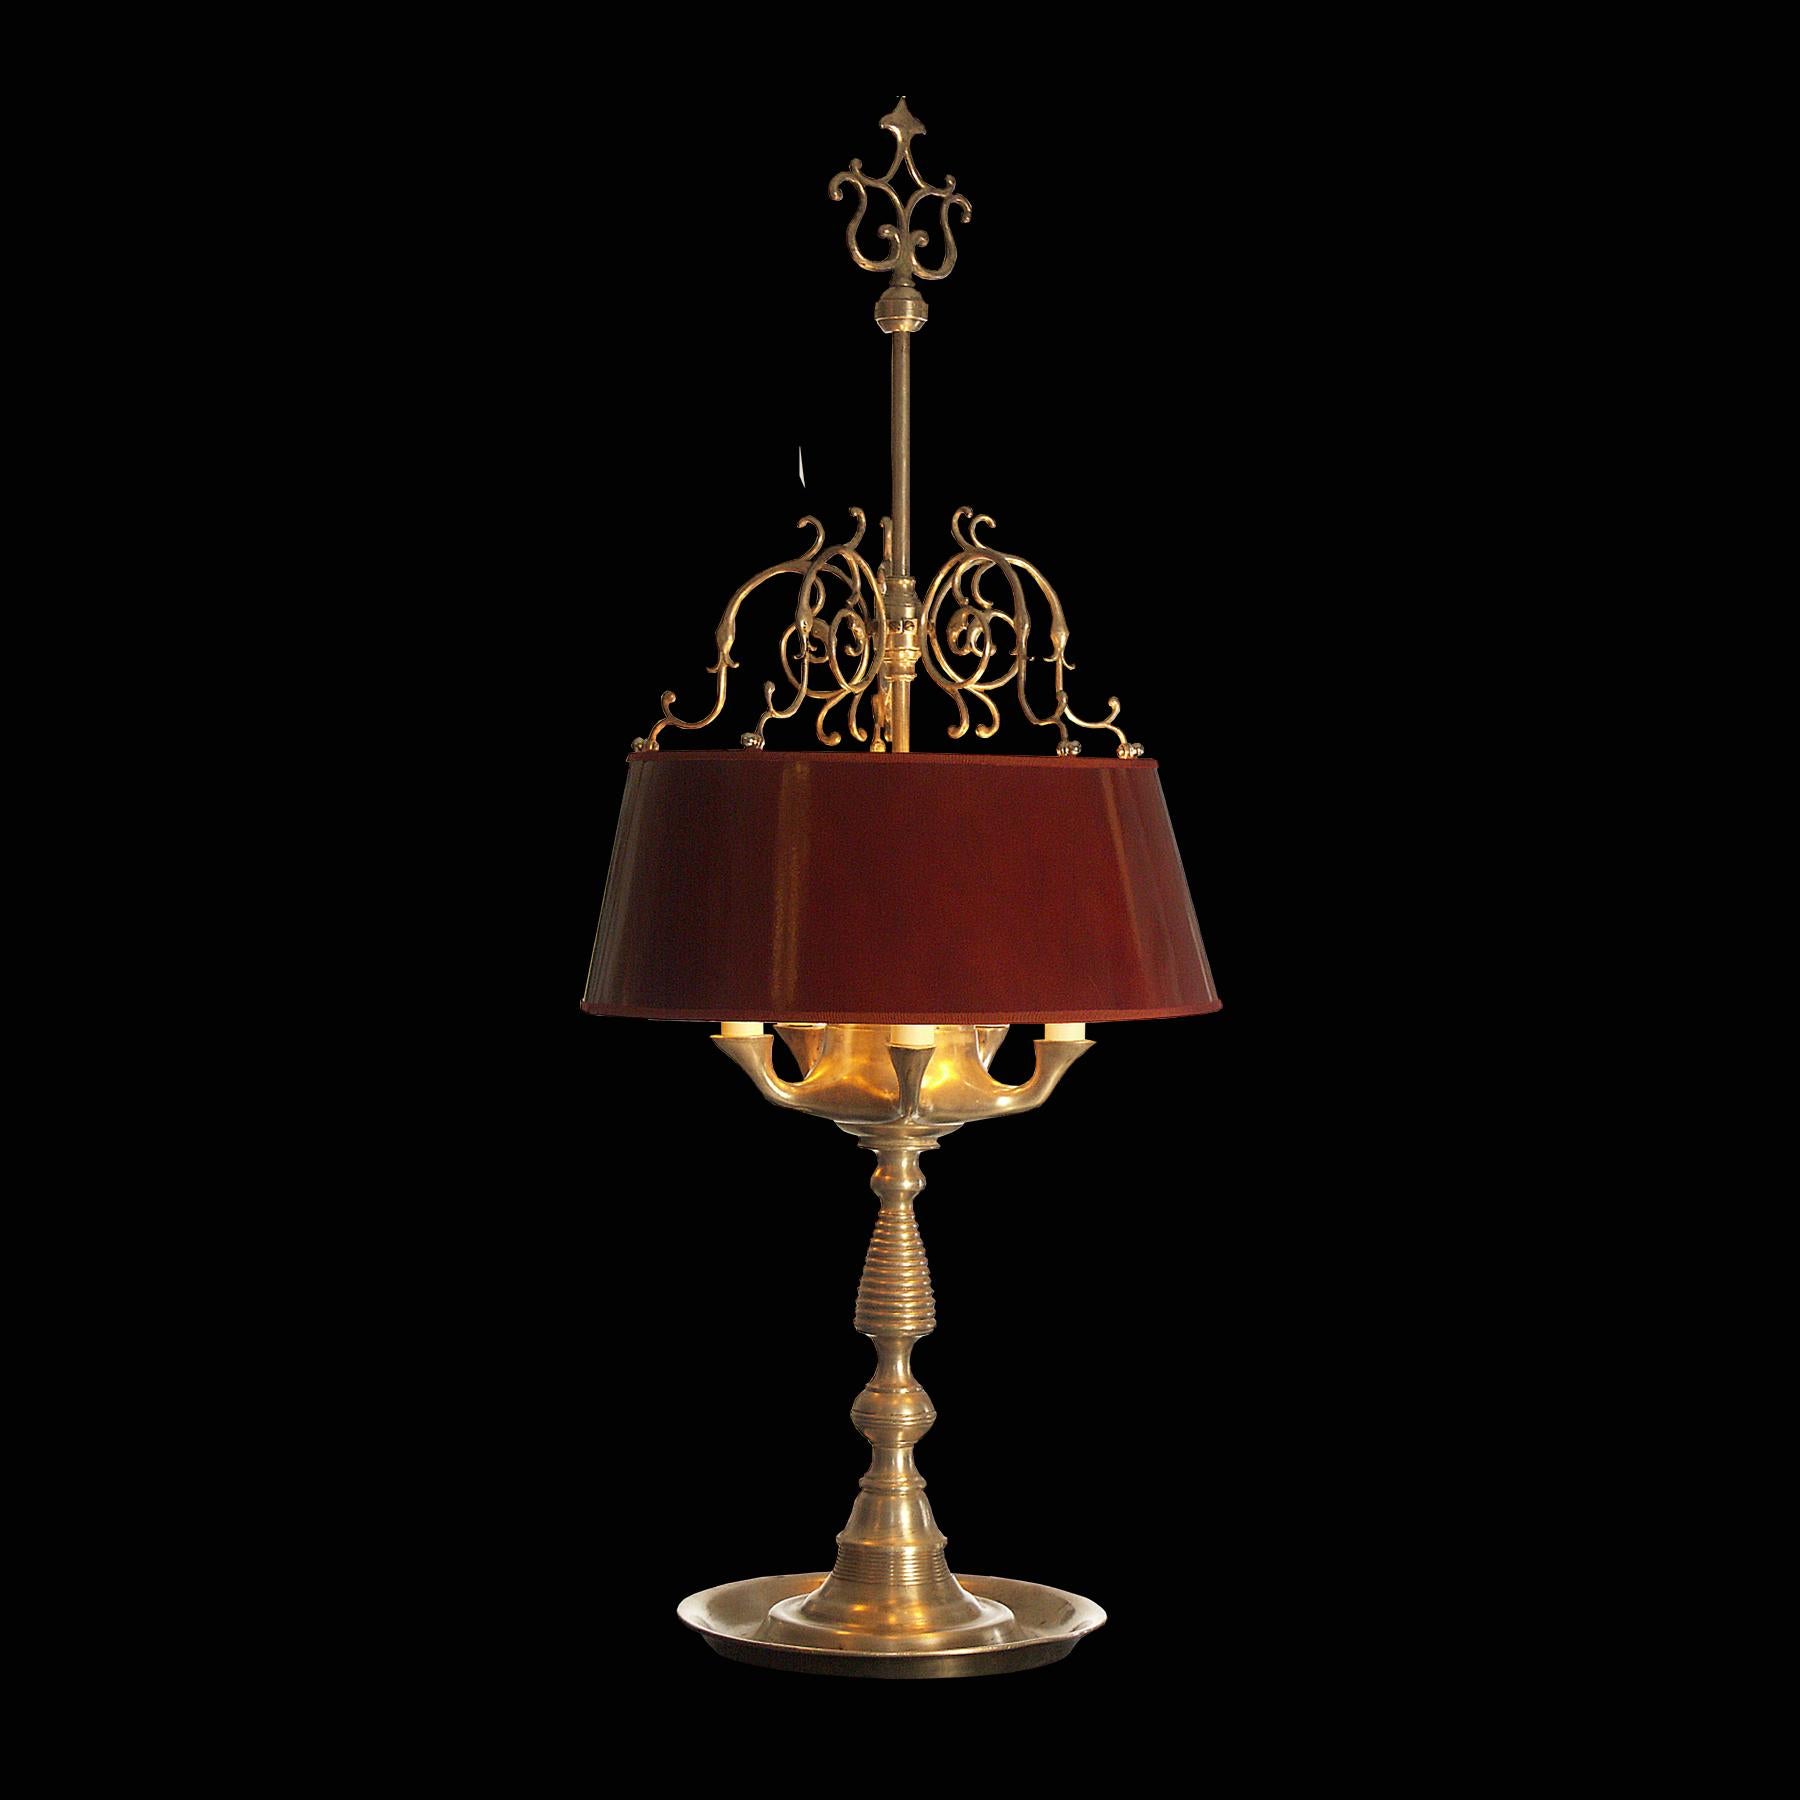 Lampe de table dans le style d'une lampe à huile antique 
Le matériau utilisé est le laiton argenté, l'abat-jour en métal laqué
Convient pour les États-Unis.

